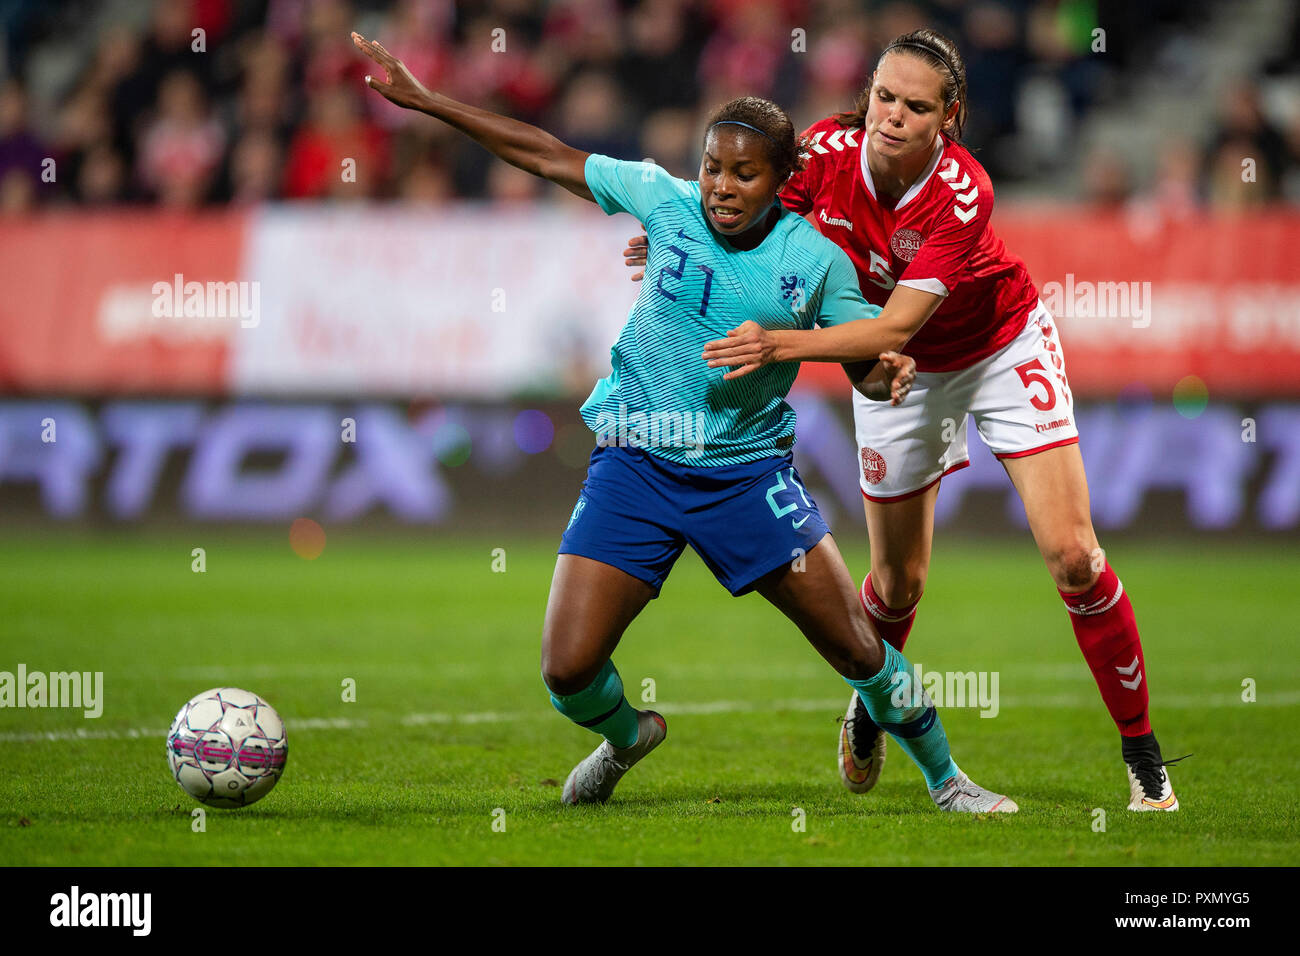 09-10-2018: Voetbal: Vrouwen Denemarken v Nederland: Viborg Beerensteyn of Netherlands, Simone Boye Sorensen of Denmark Stock Photo - Alamy